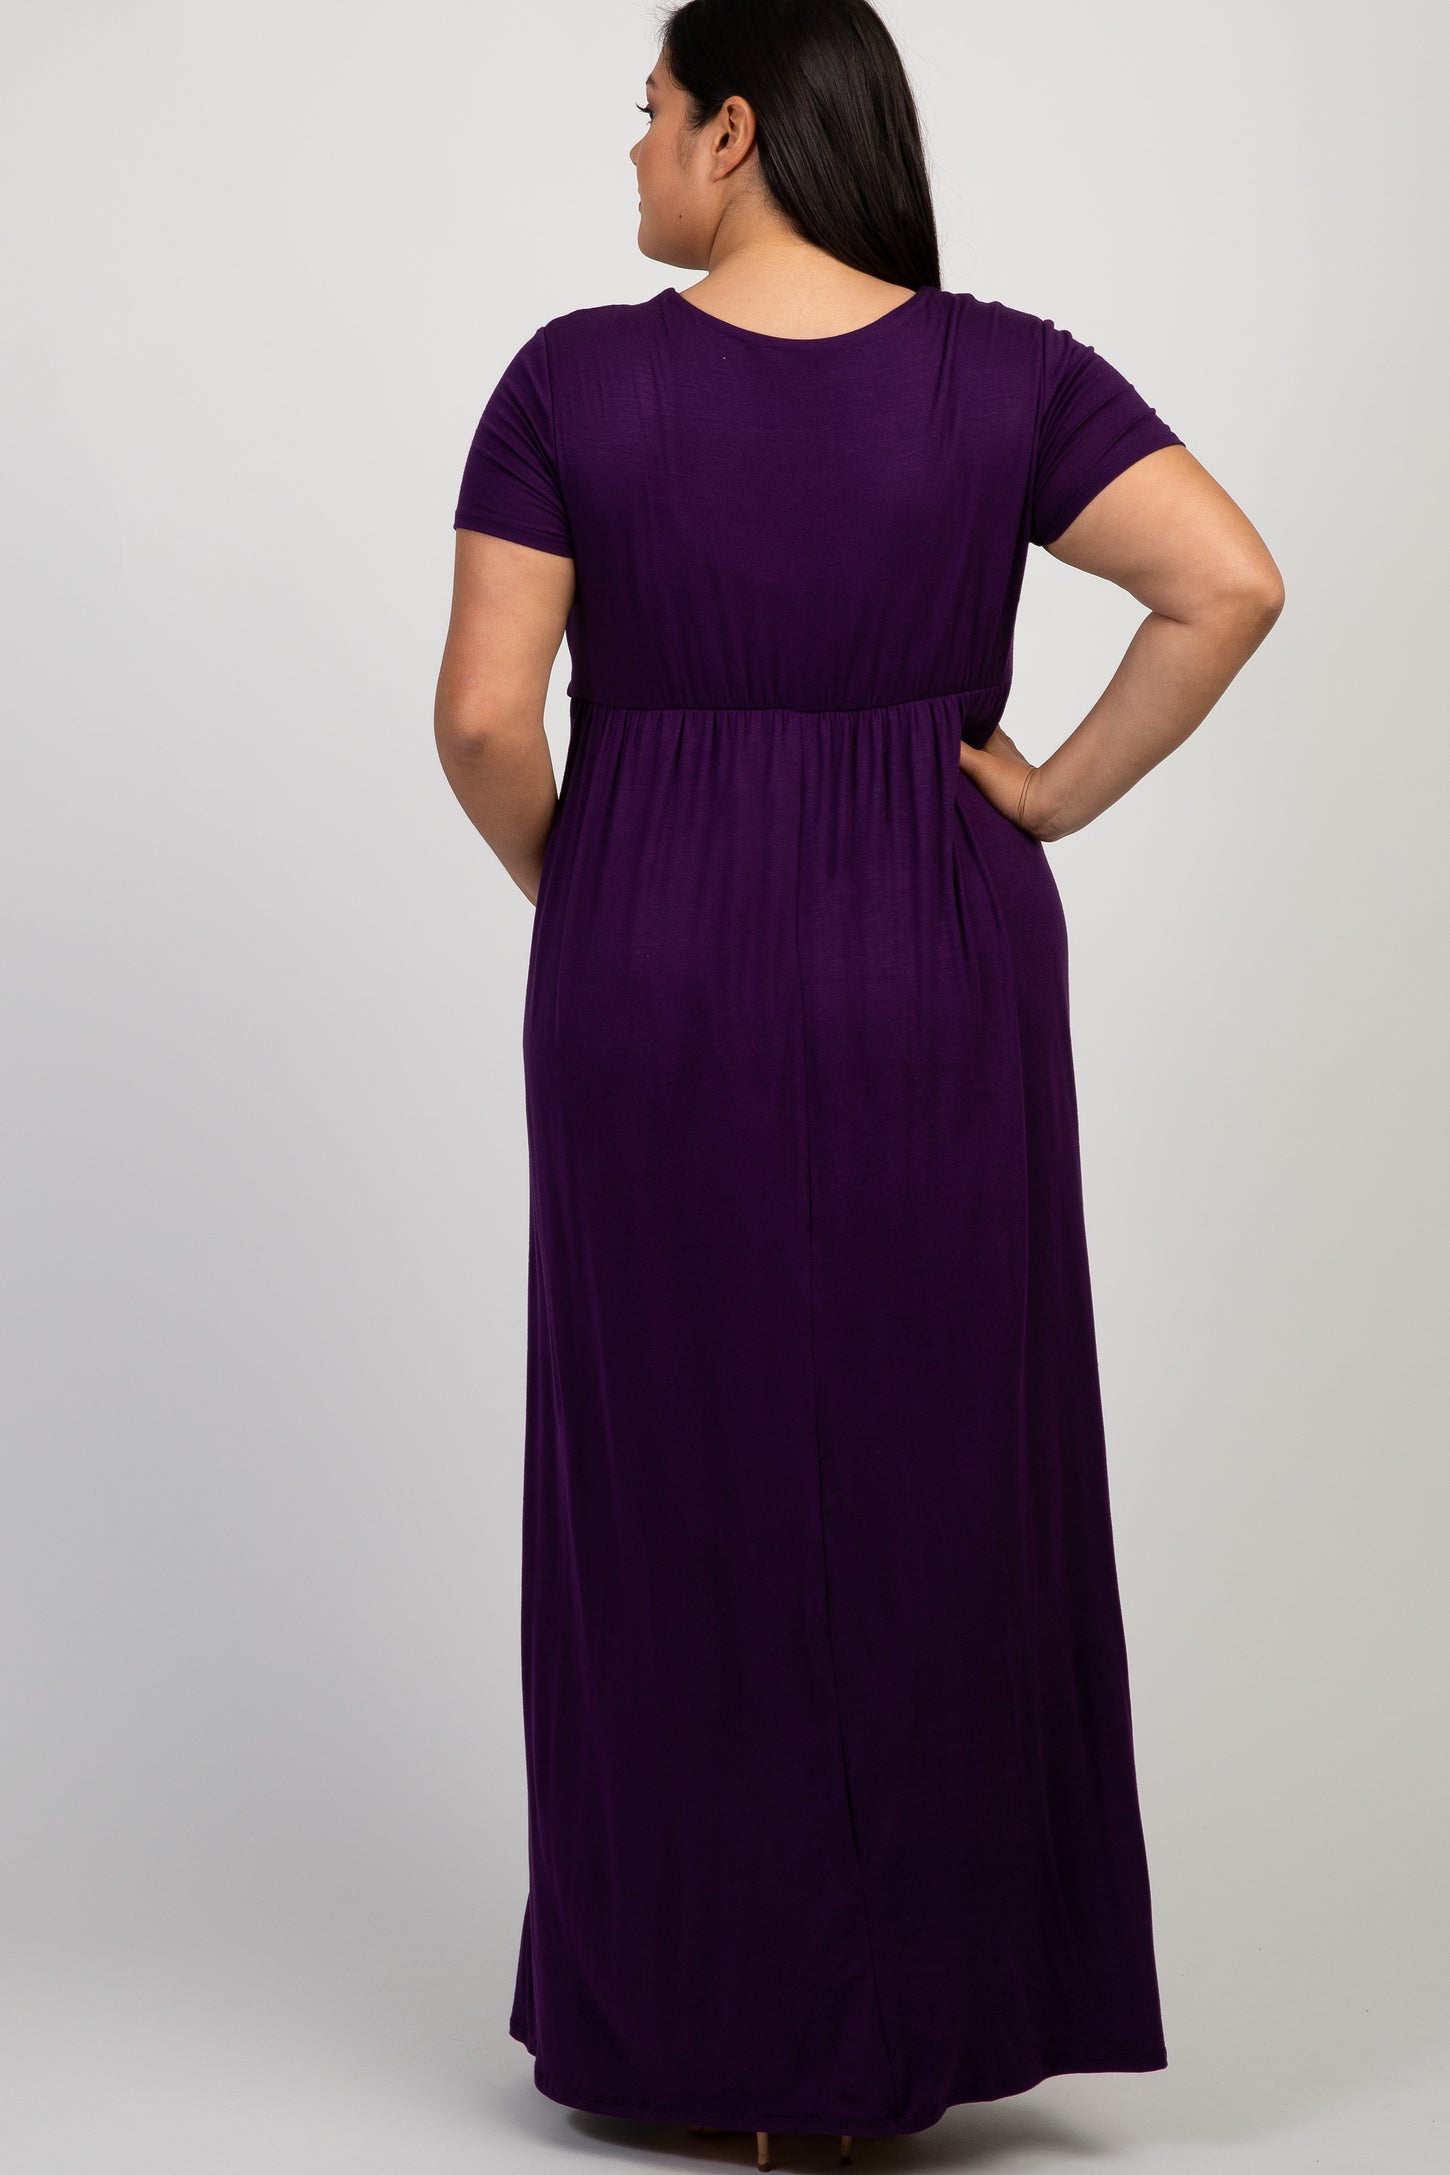 Purple Draped Plus Maternity/Nursing Maxi Dress